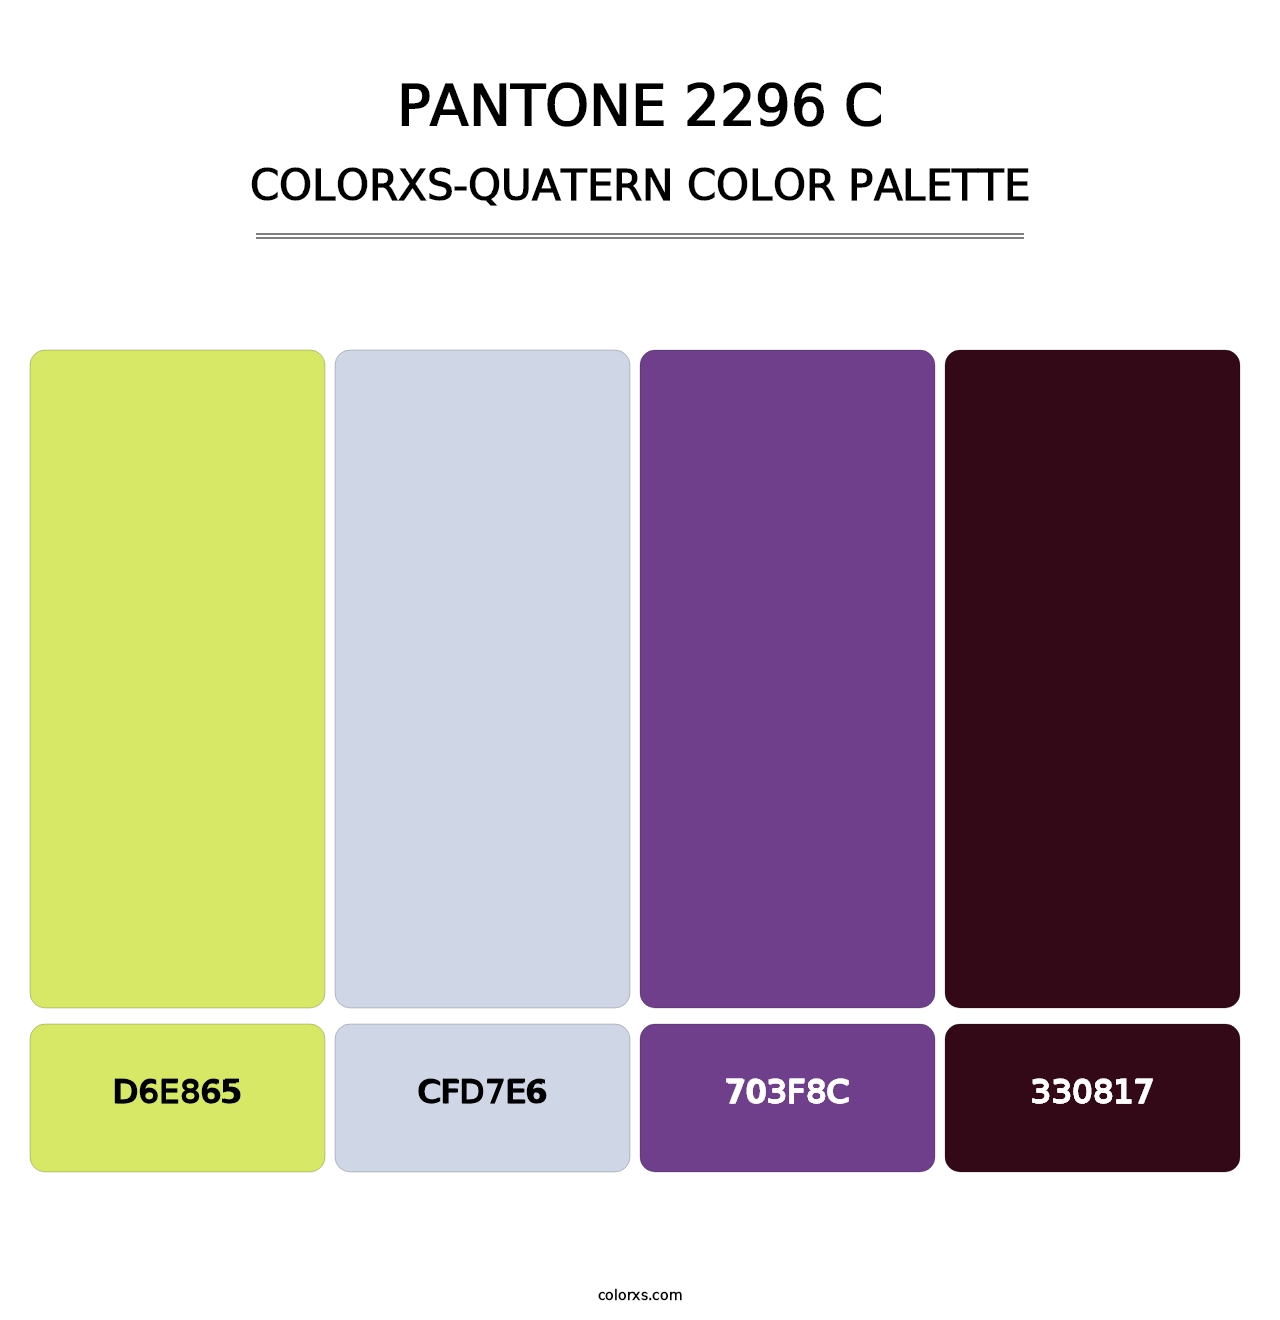 PANTONE 2296 C - Colorxs Quatern Palette